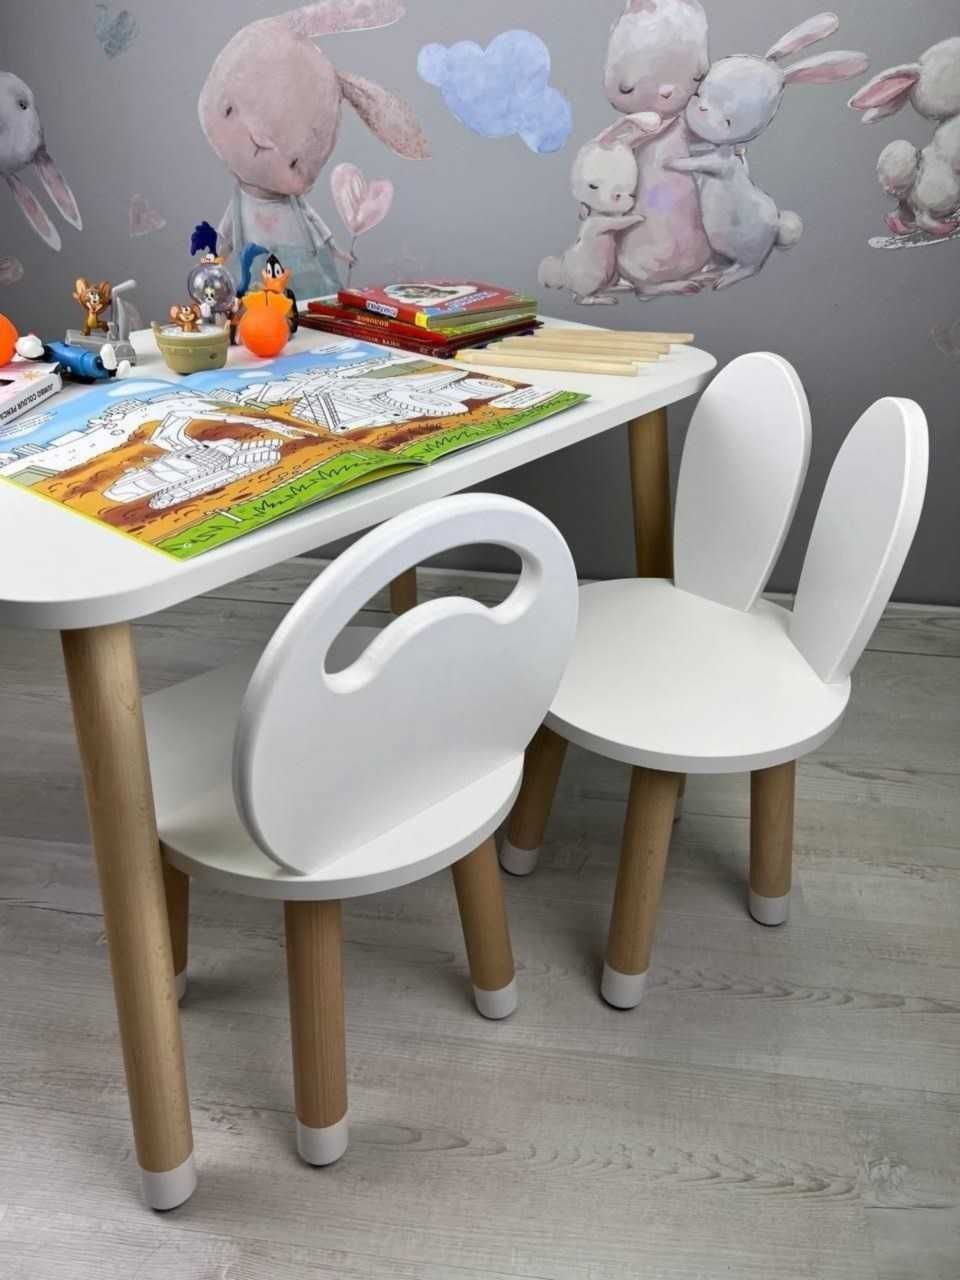 Детский столик деревянный и стульчик для игр Собственное производство